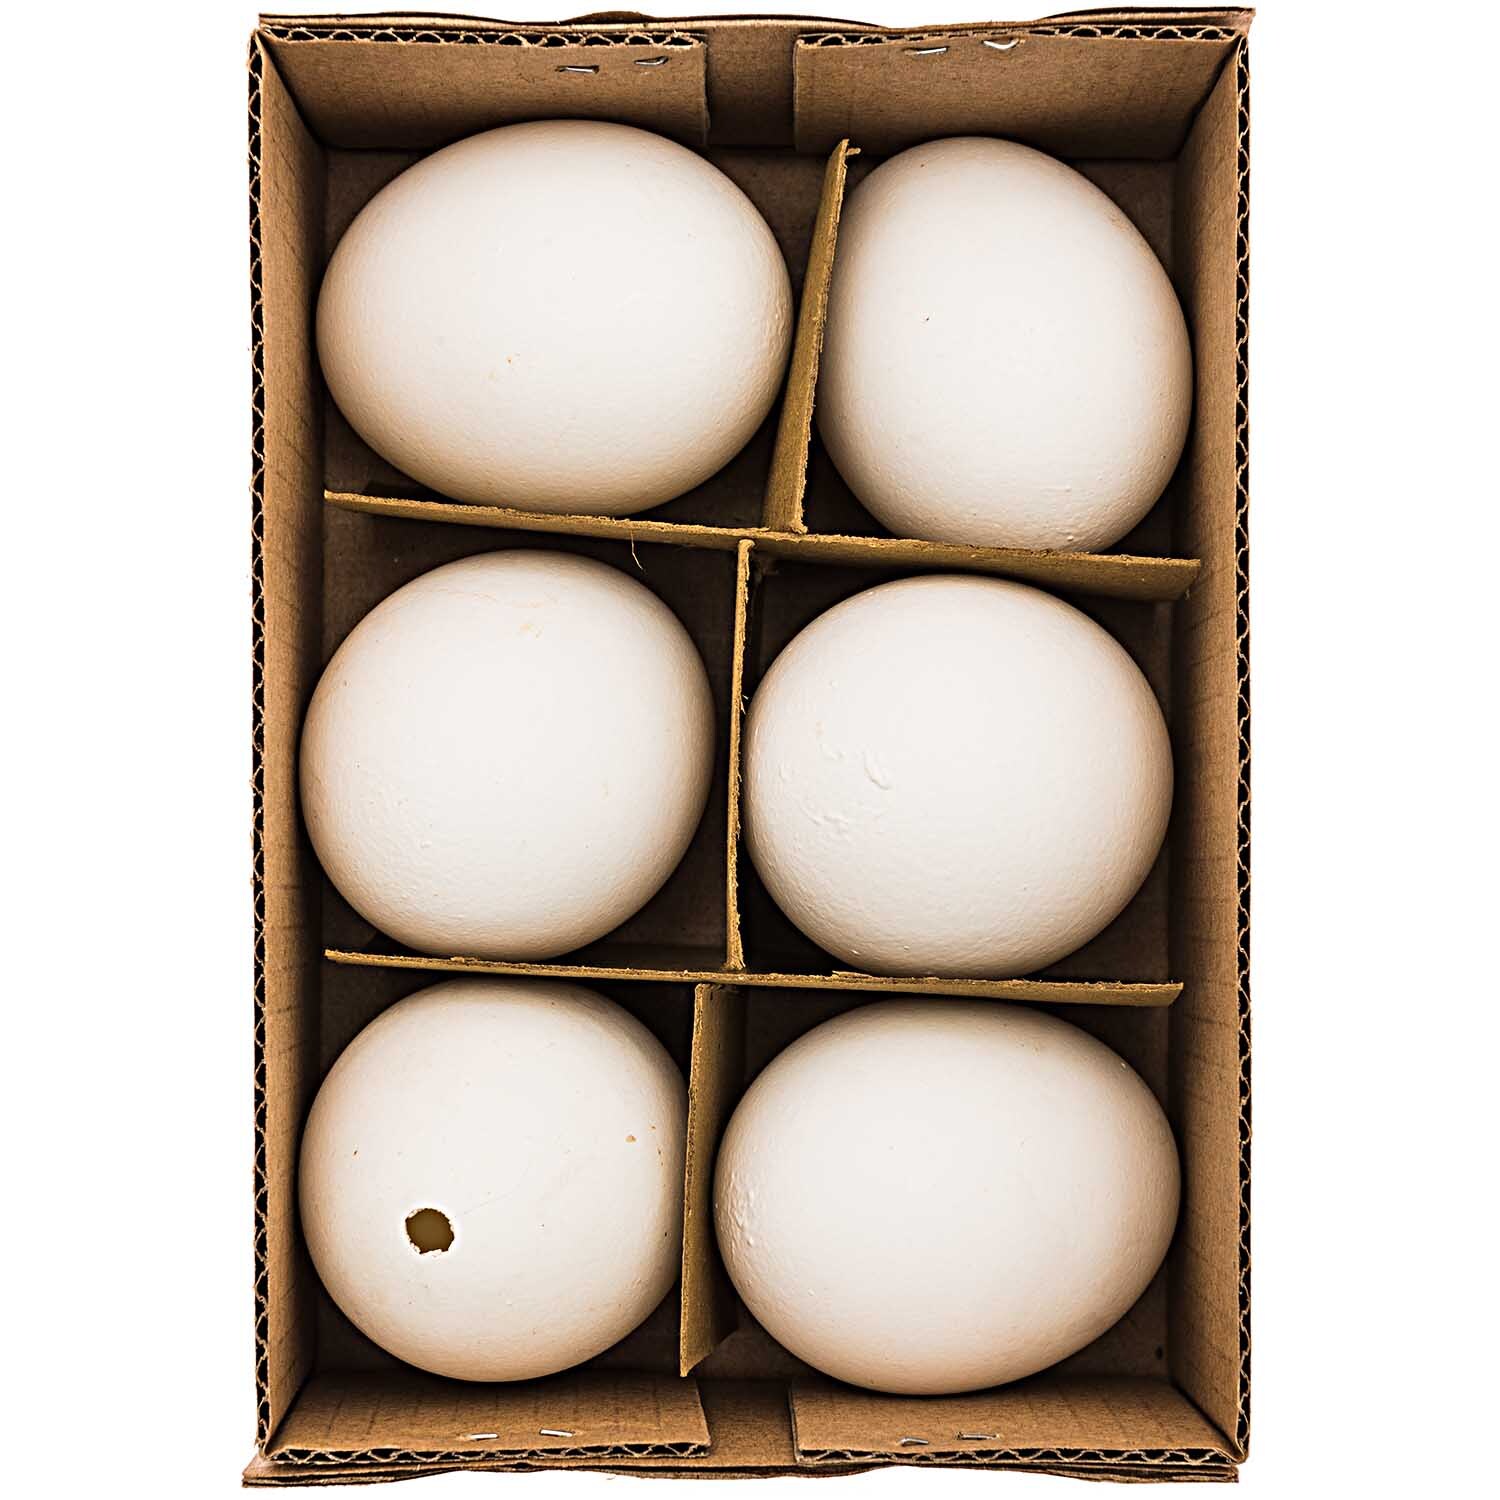 Hühnerei weiß ausgeblasen 5,5cm 6 Stück